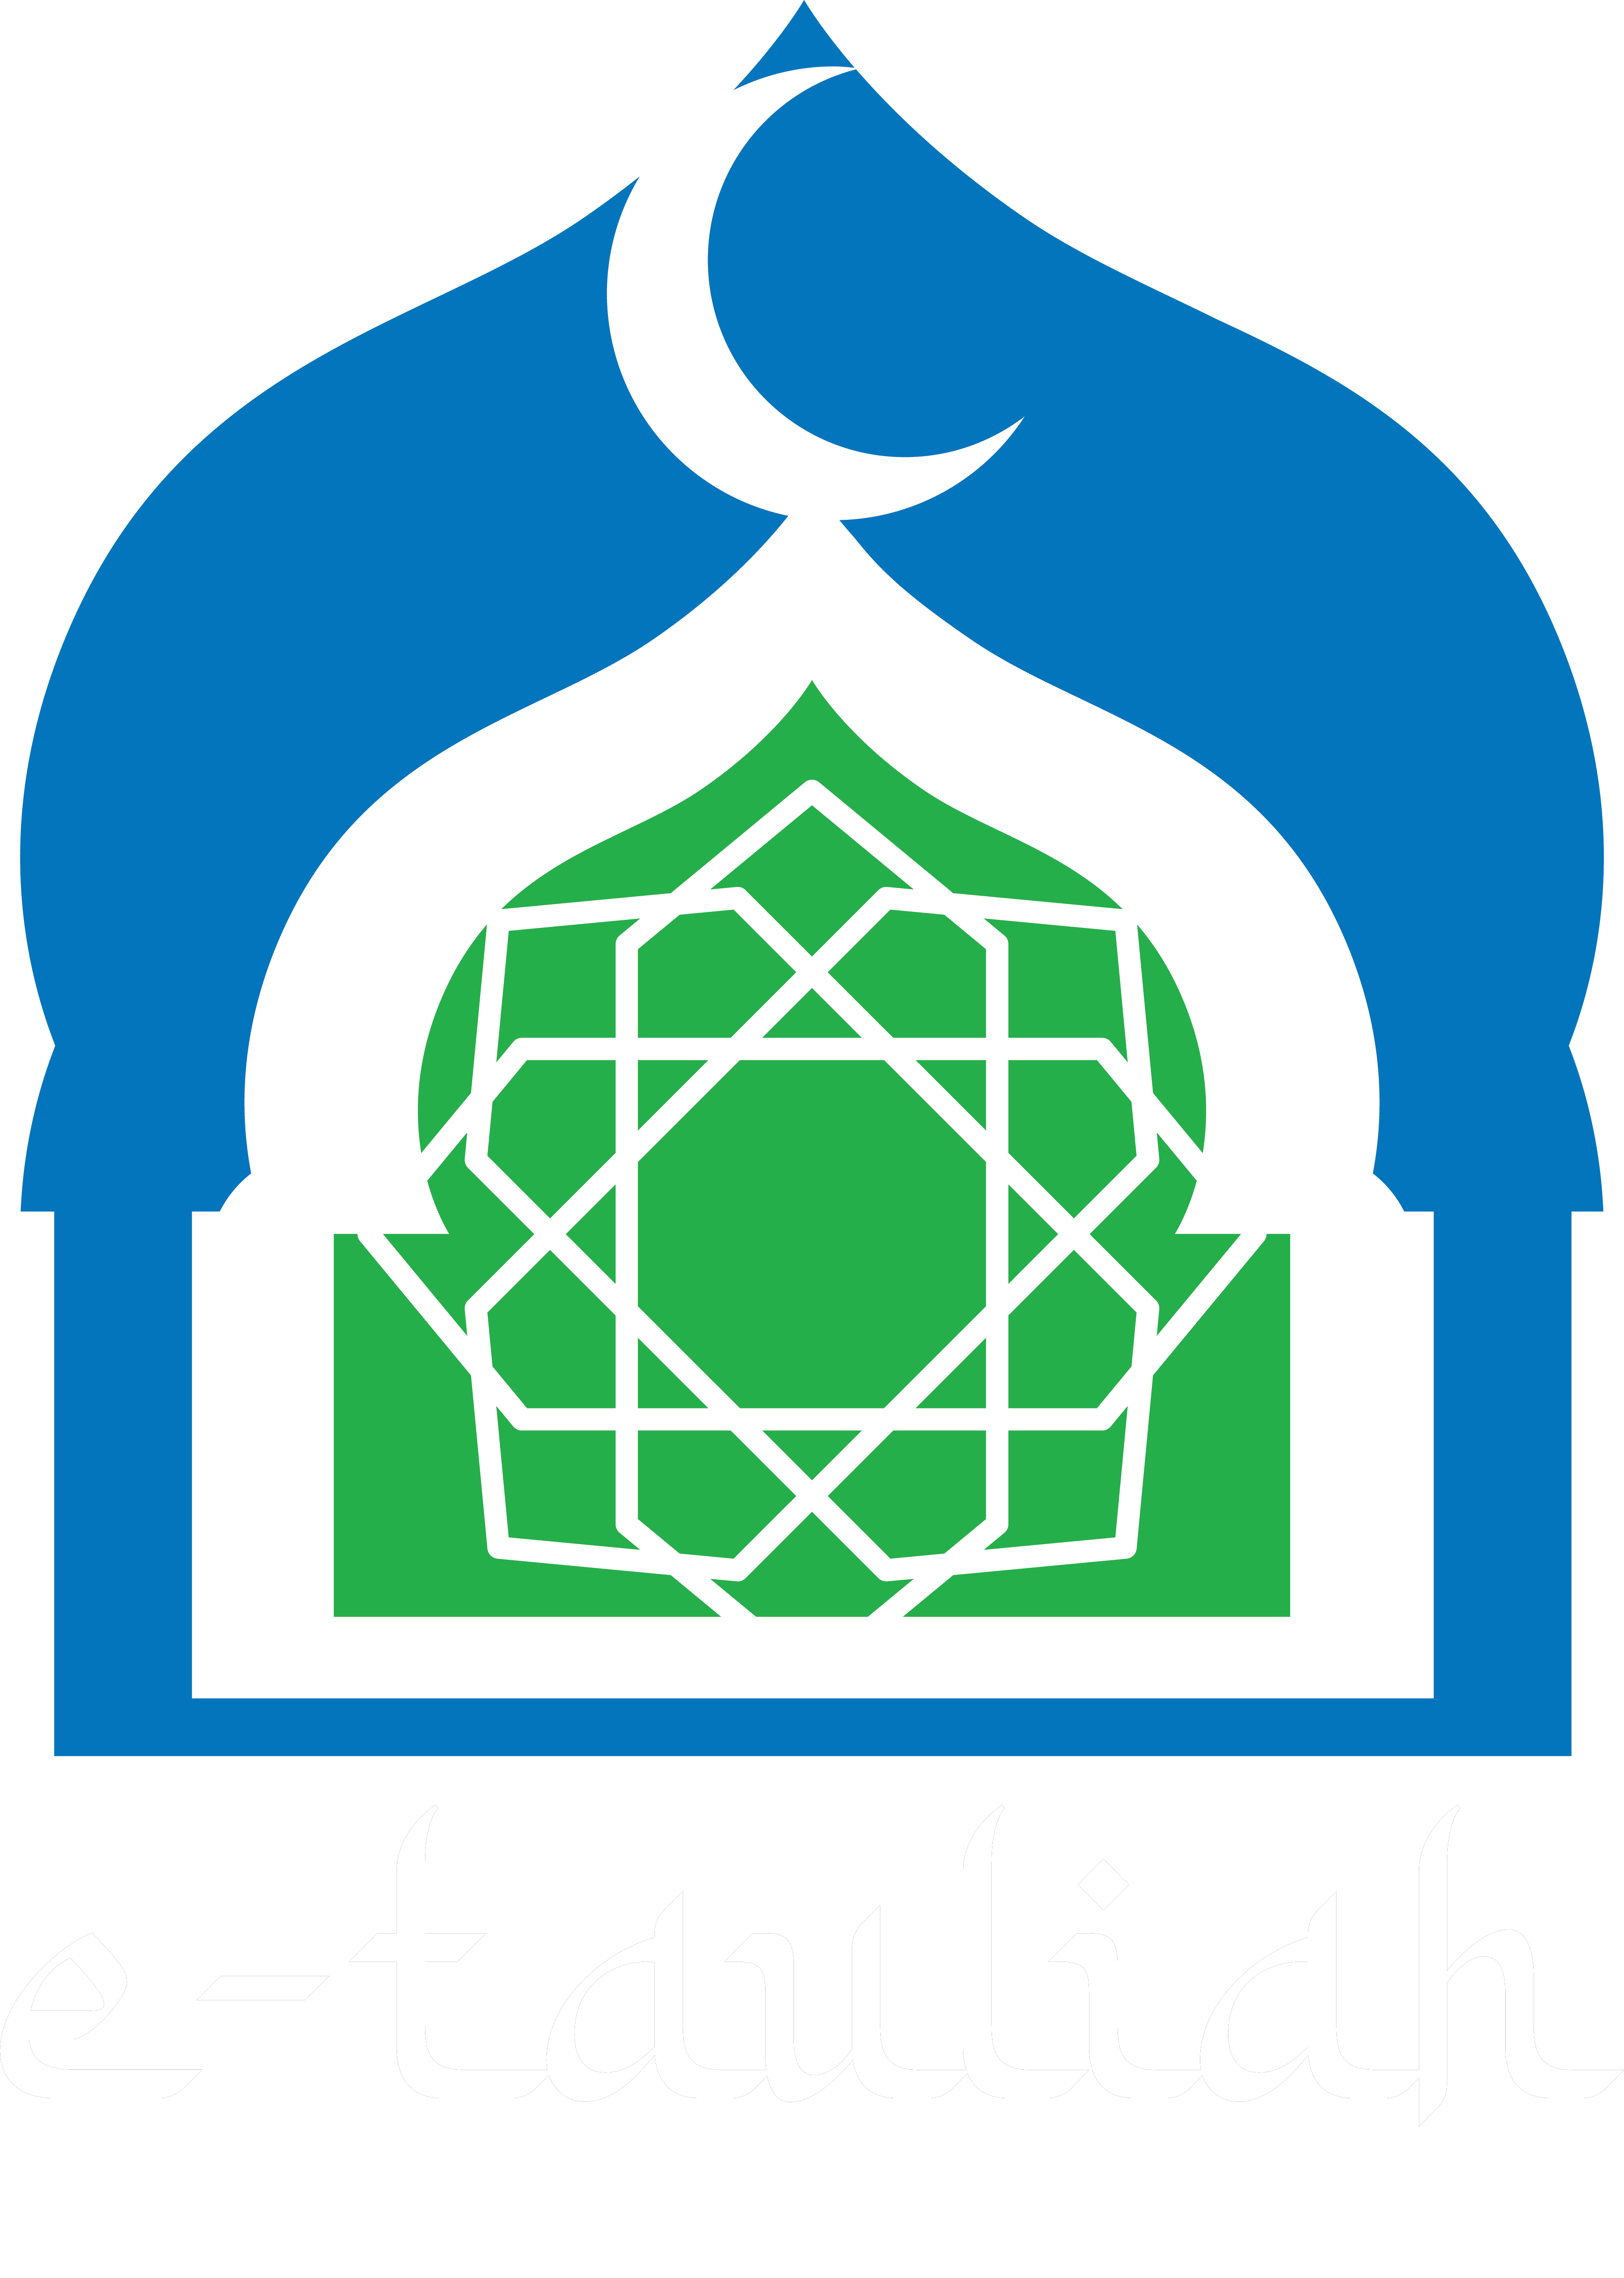 Logo eTauliah